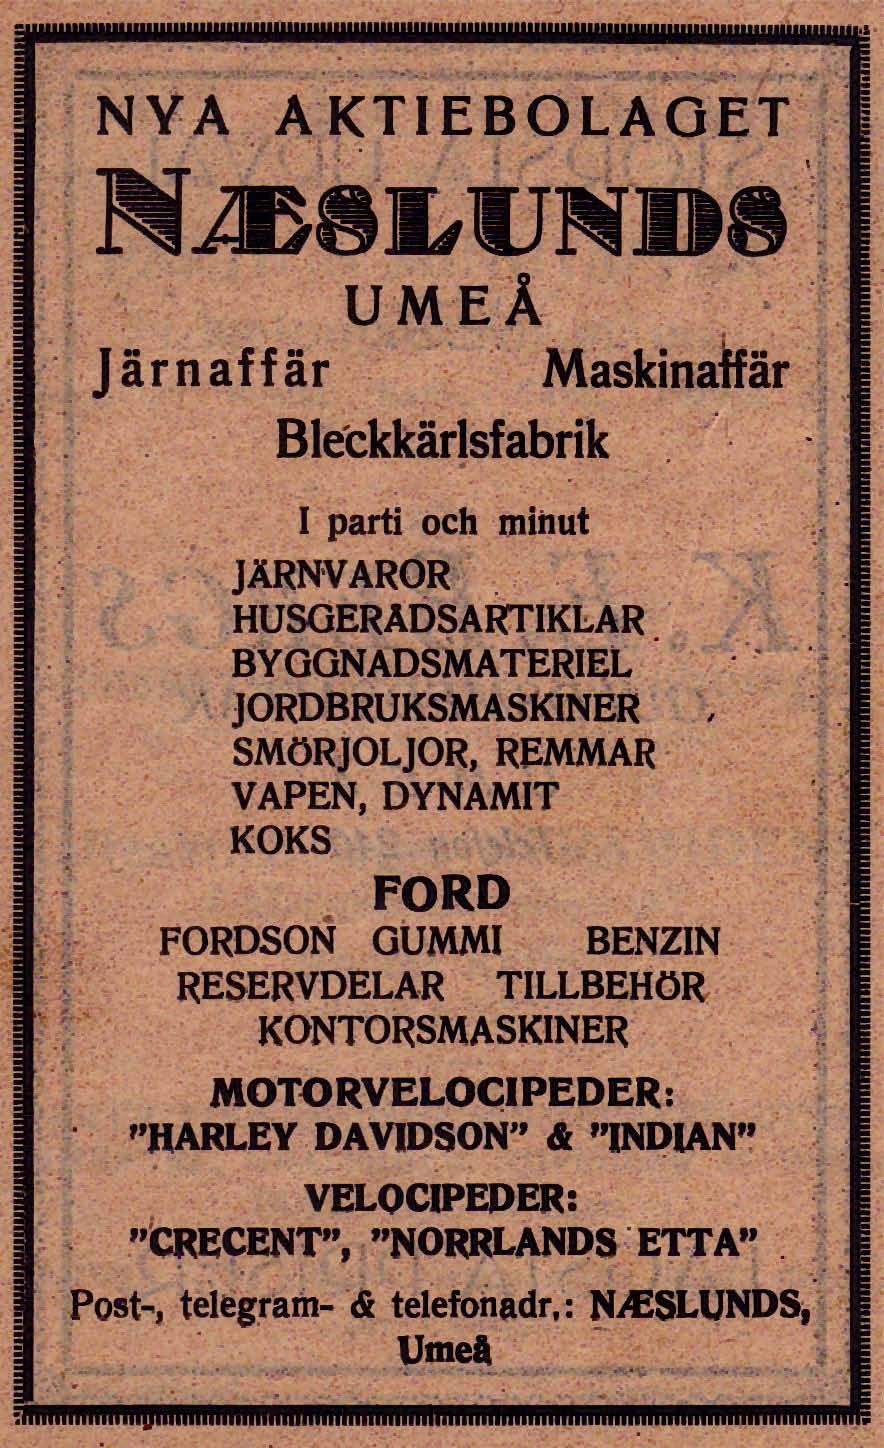 16 Naeslunds Järnaffär, Maskinaffär och Bleckkärlsfabrik Kungsgatan 54 Tel. 440, 558 1926 -- Chef Torsten Stigell fram till den 5 September 1930 Resia Industri AB Sylvia Kungsgatan 51 Tel.